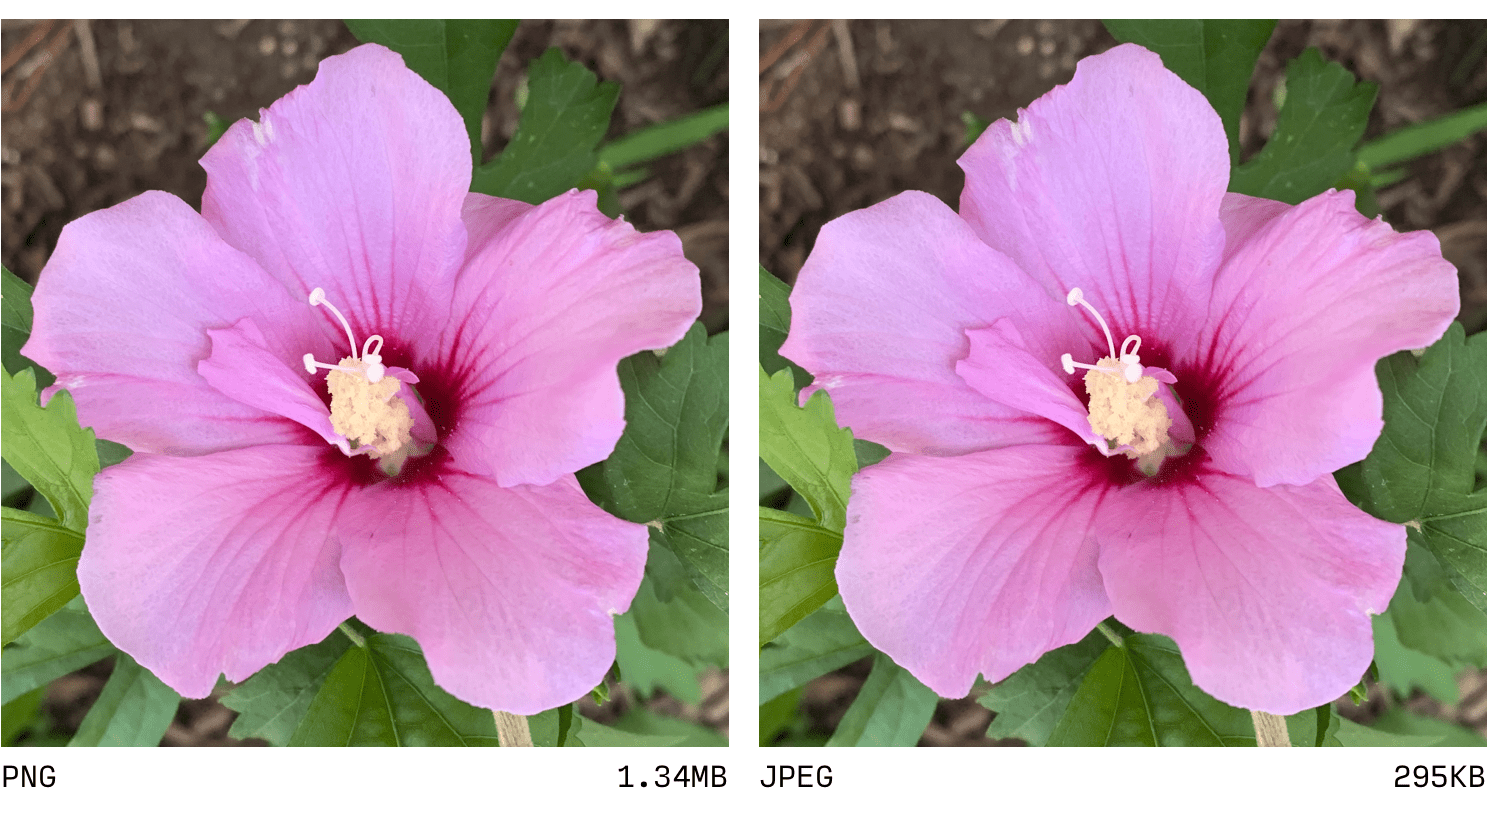 JPEG ve PNG&#39;nin karşılaştırması.